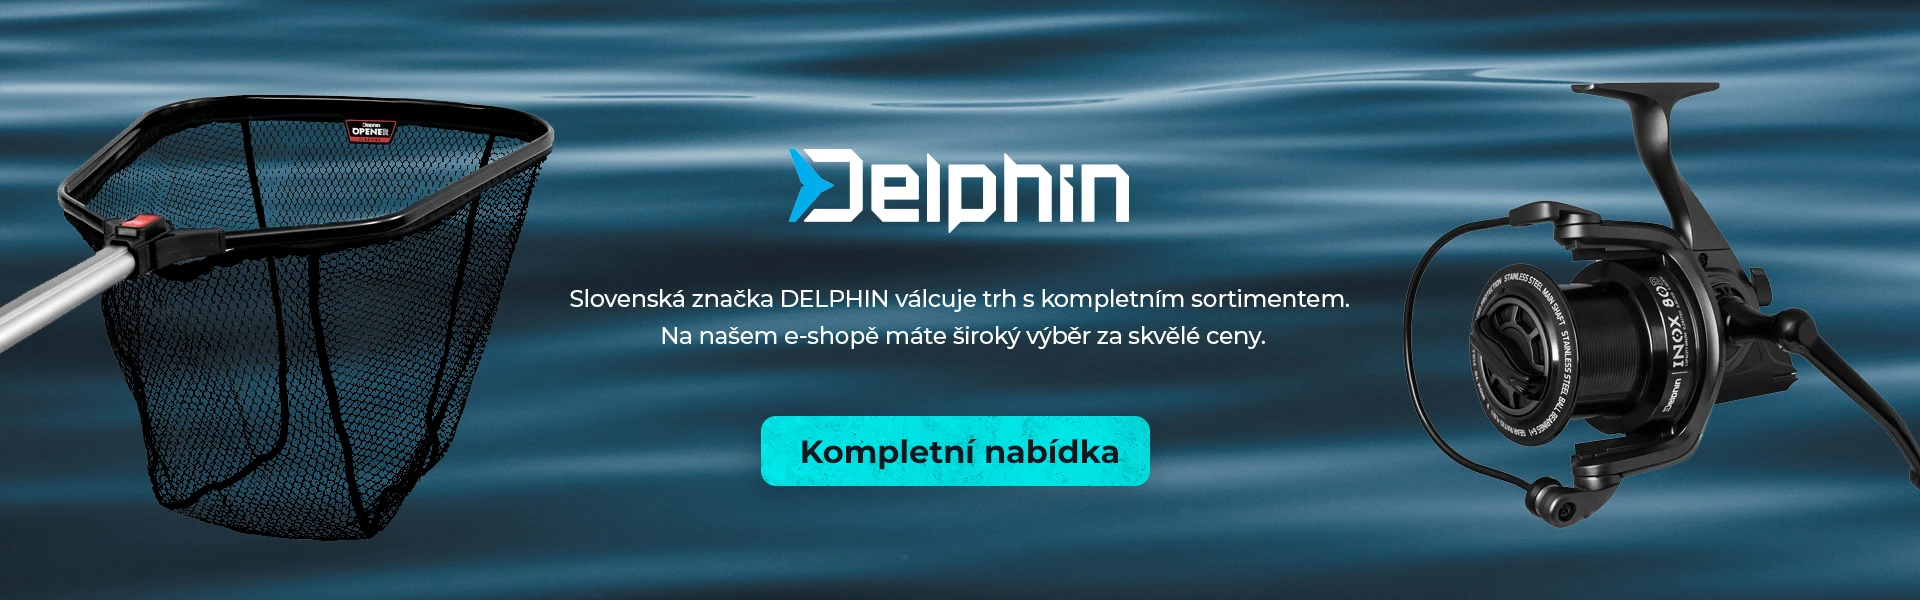 Nová rybářská značka DELPHIN skladem